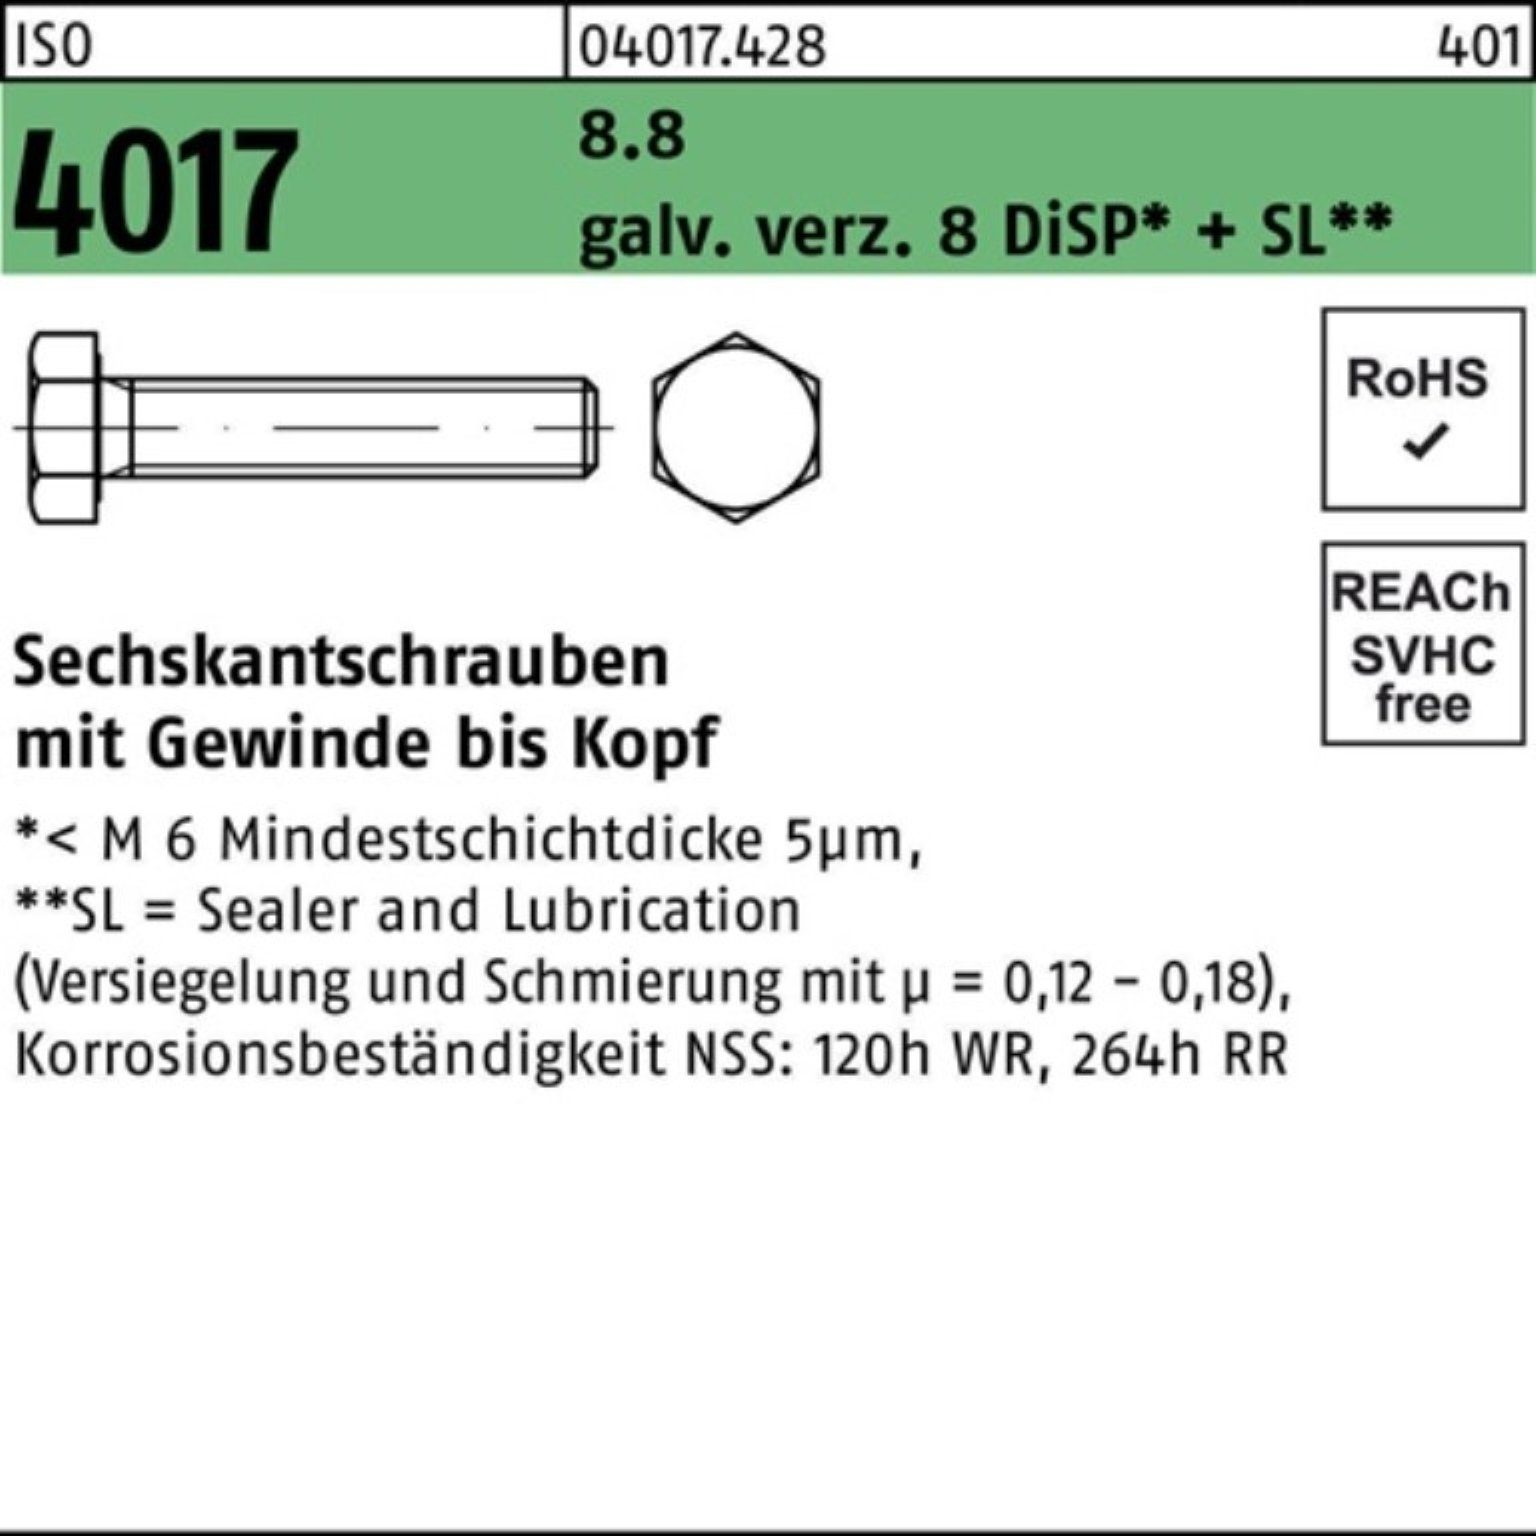 18 galv.verz. Sechskantschraube Sechskantschraube M6x 8 VG ISO 500er DiSP+ Bufab 8.8 4017 Pack